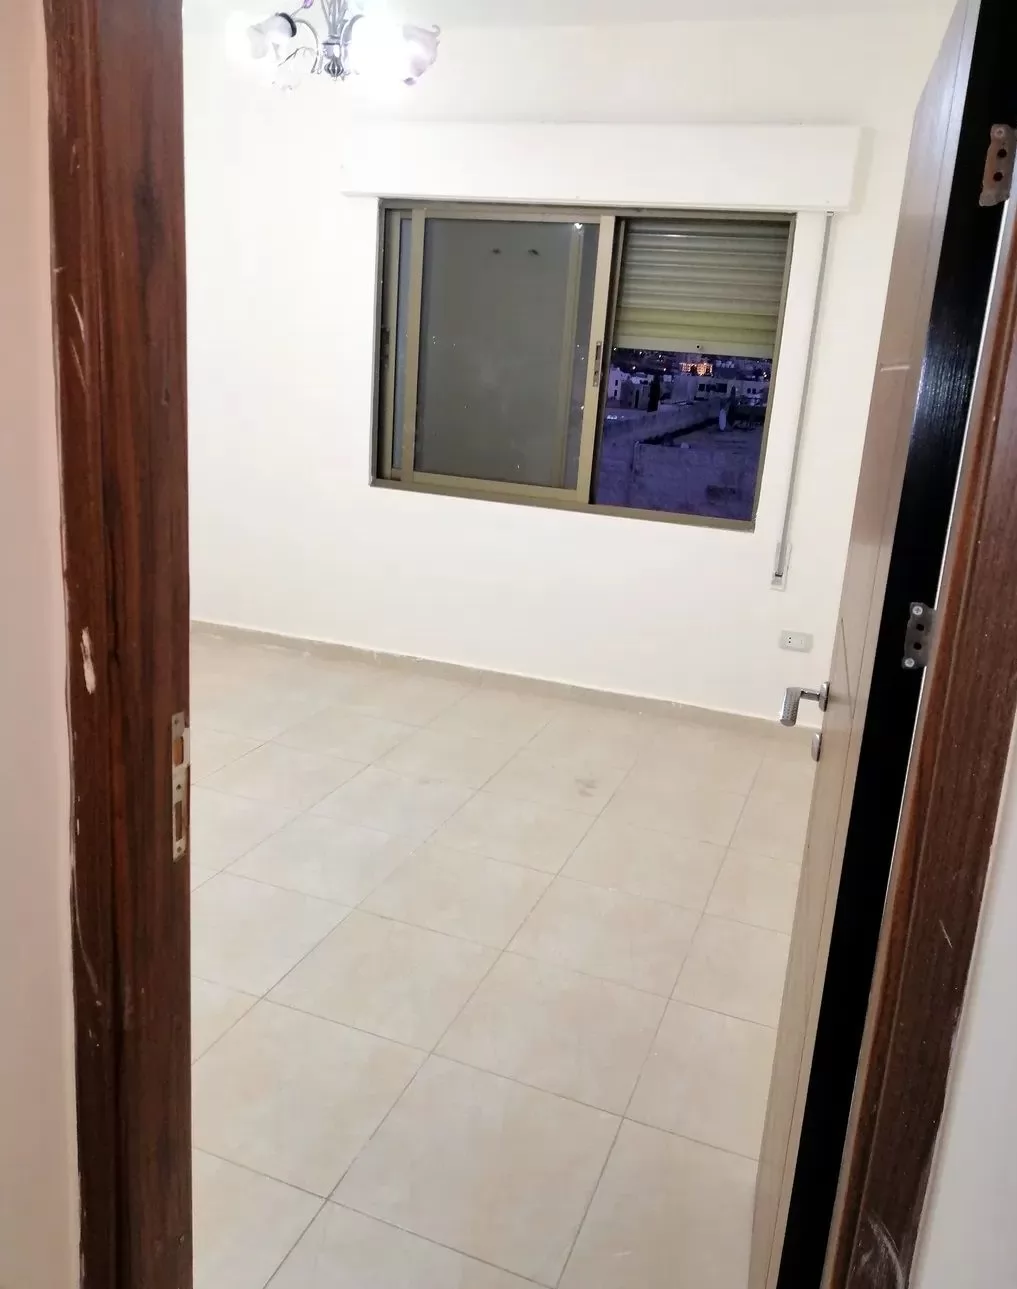 سكني عقار جاهز 2 غرف  غير مفروش شقة  للبيع في عمان #25773 - 1  صورة 